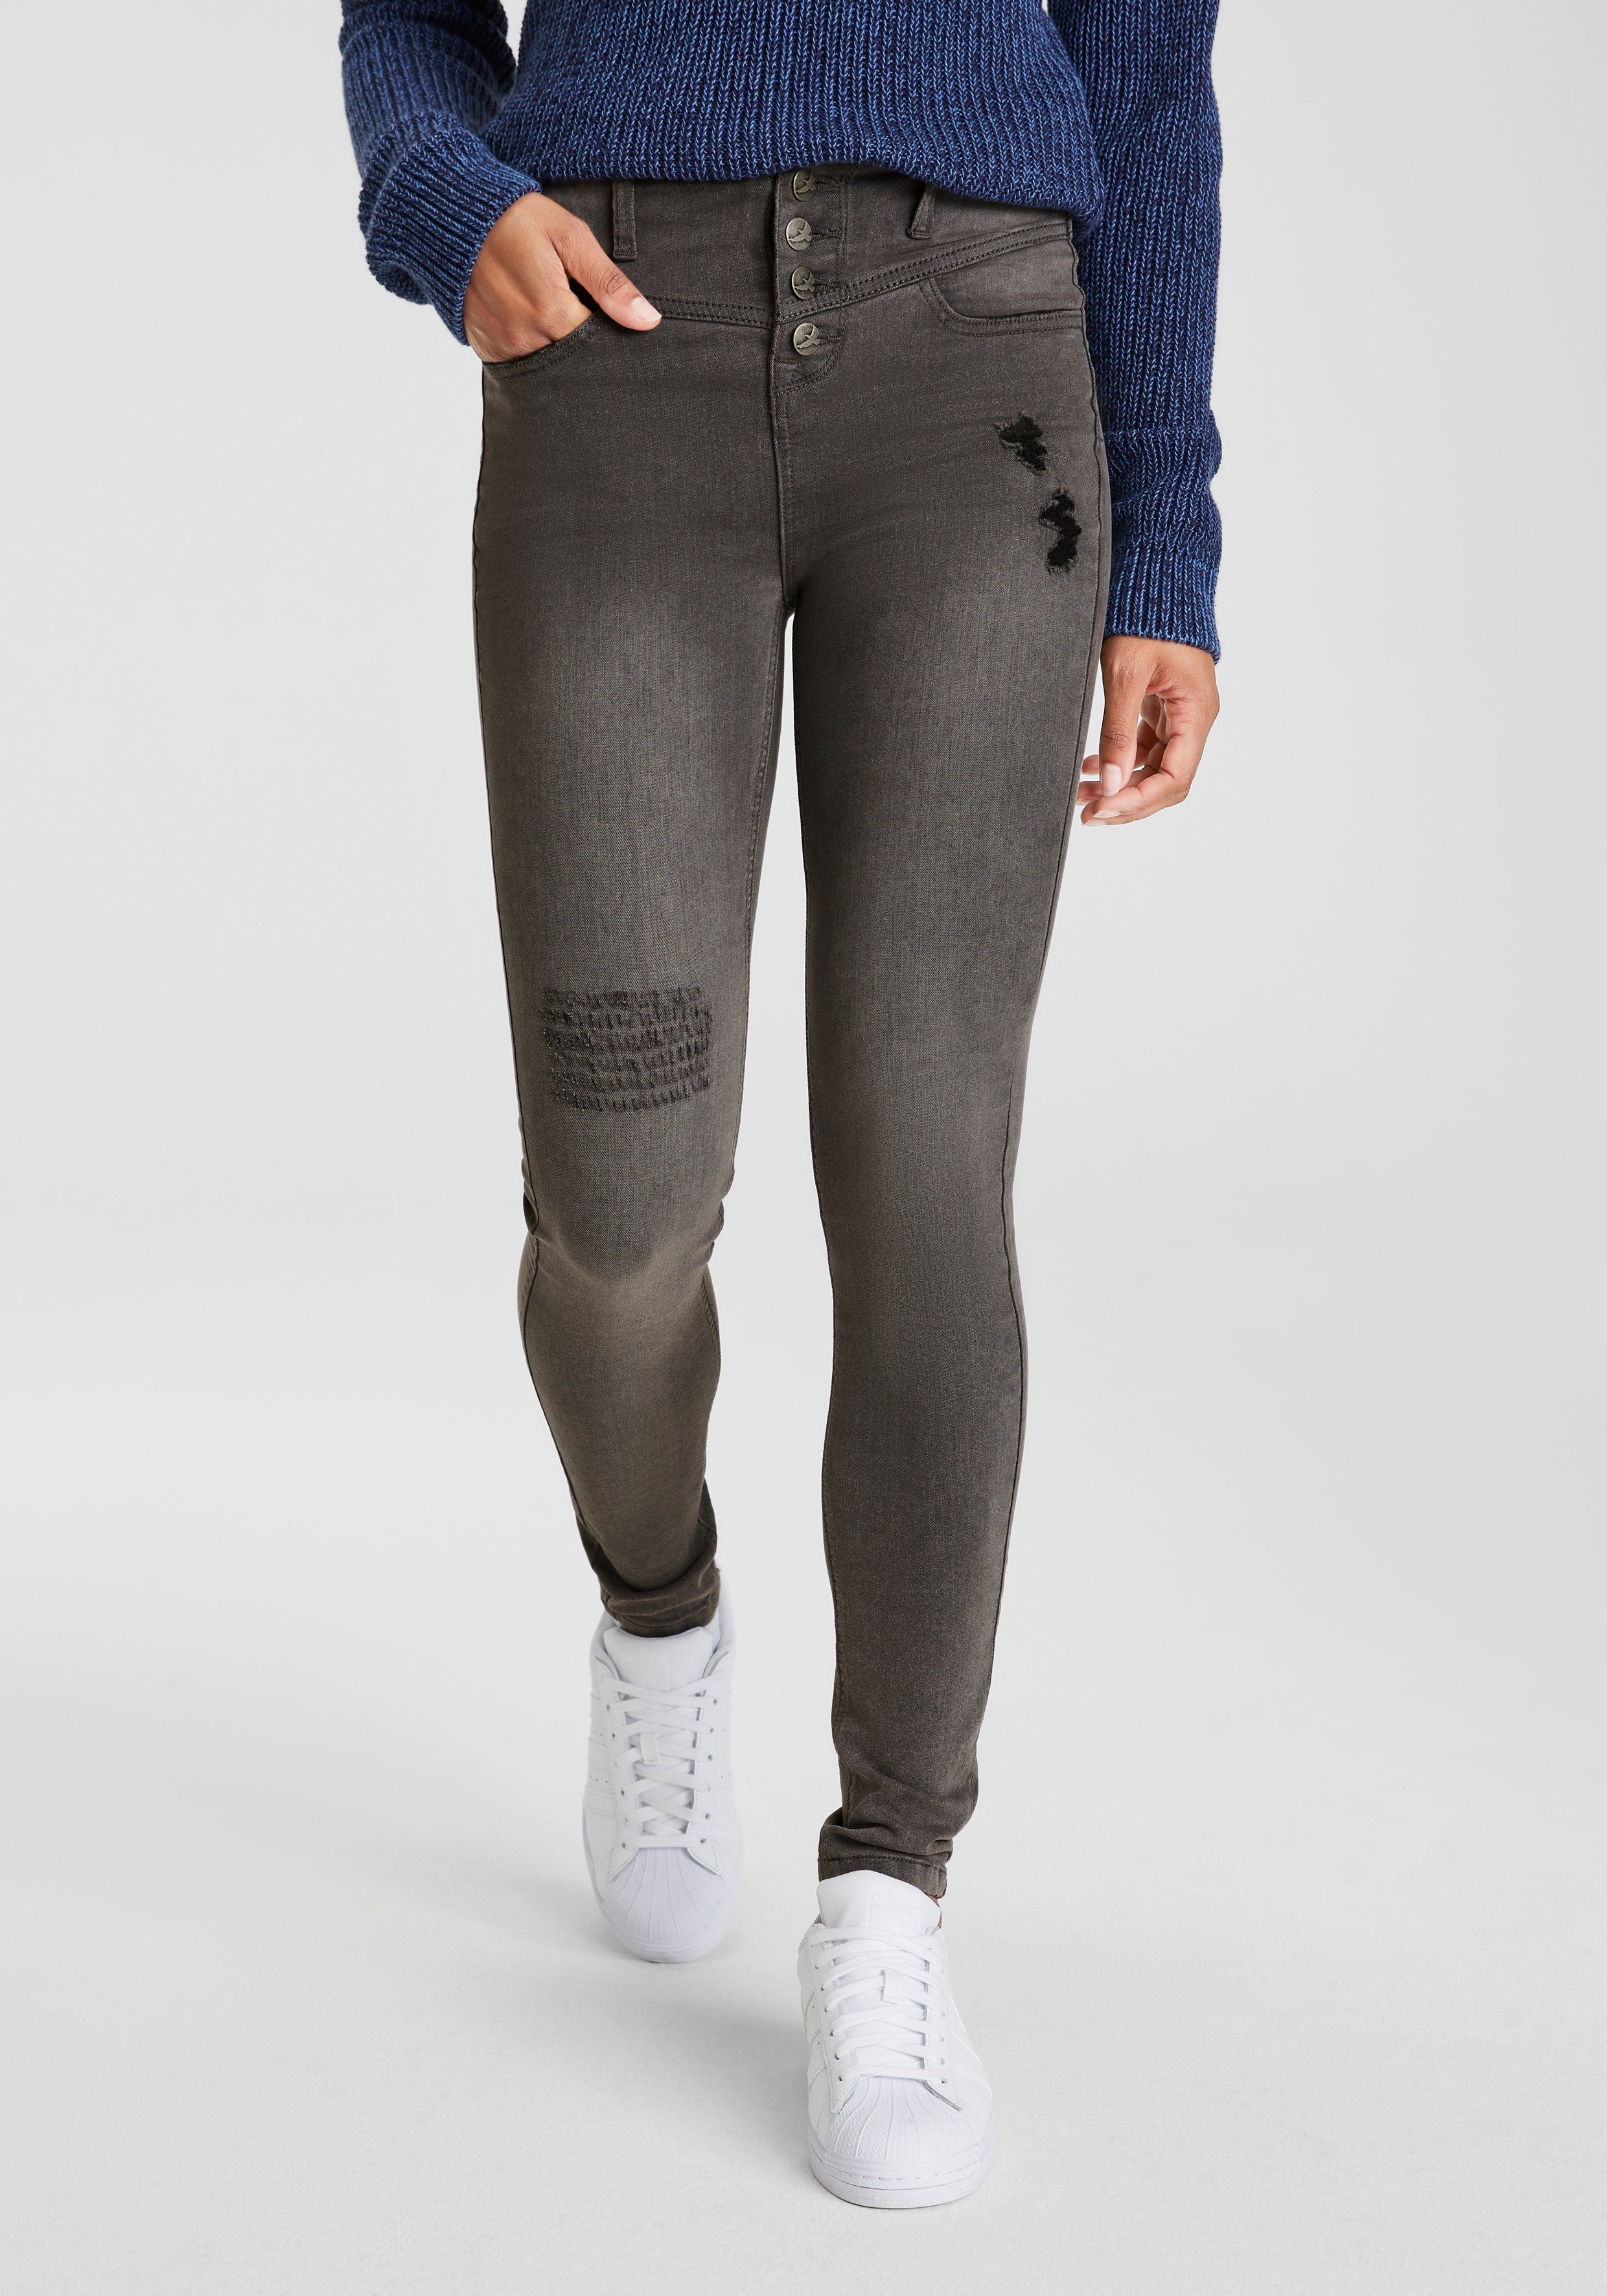 High Arizona Stretch Ultra grey-used Waist Skinny-fit-Jeans